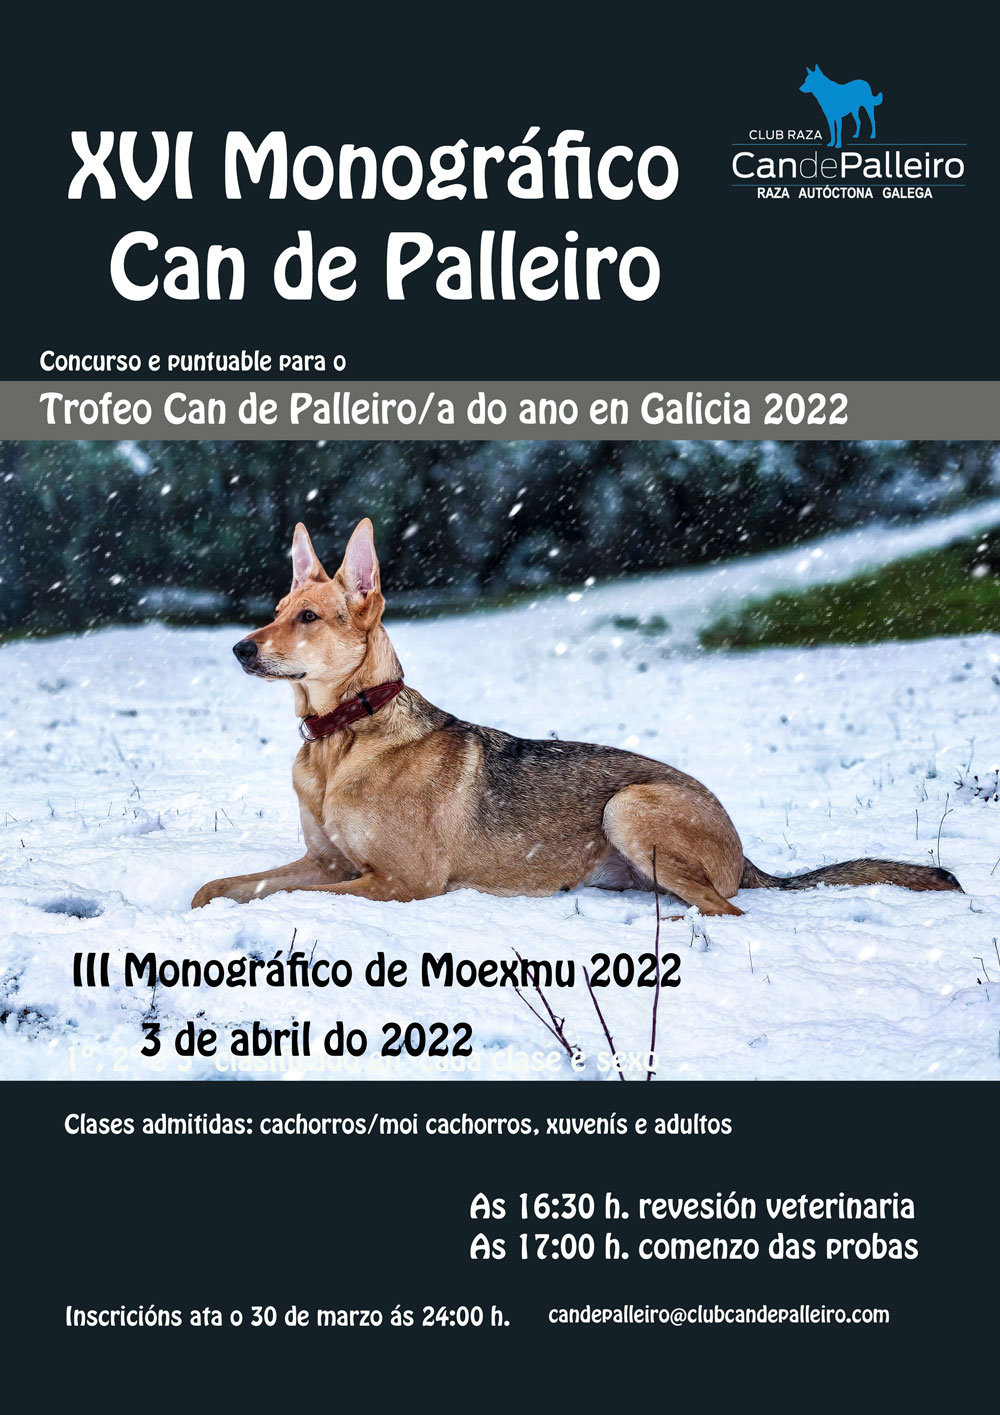 XVI Monográfico Can de Palleiro Moexmu 2022